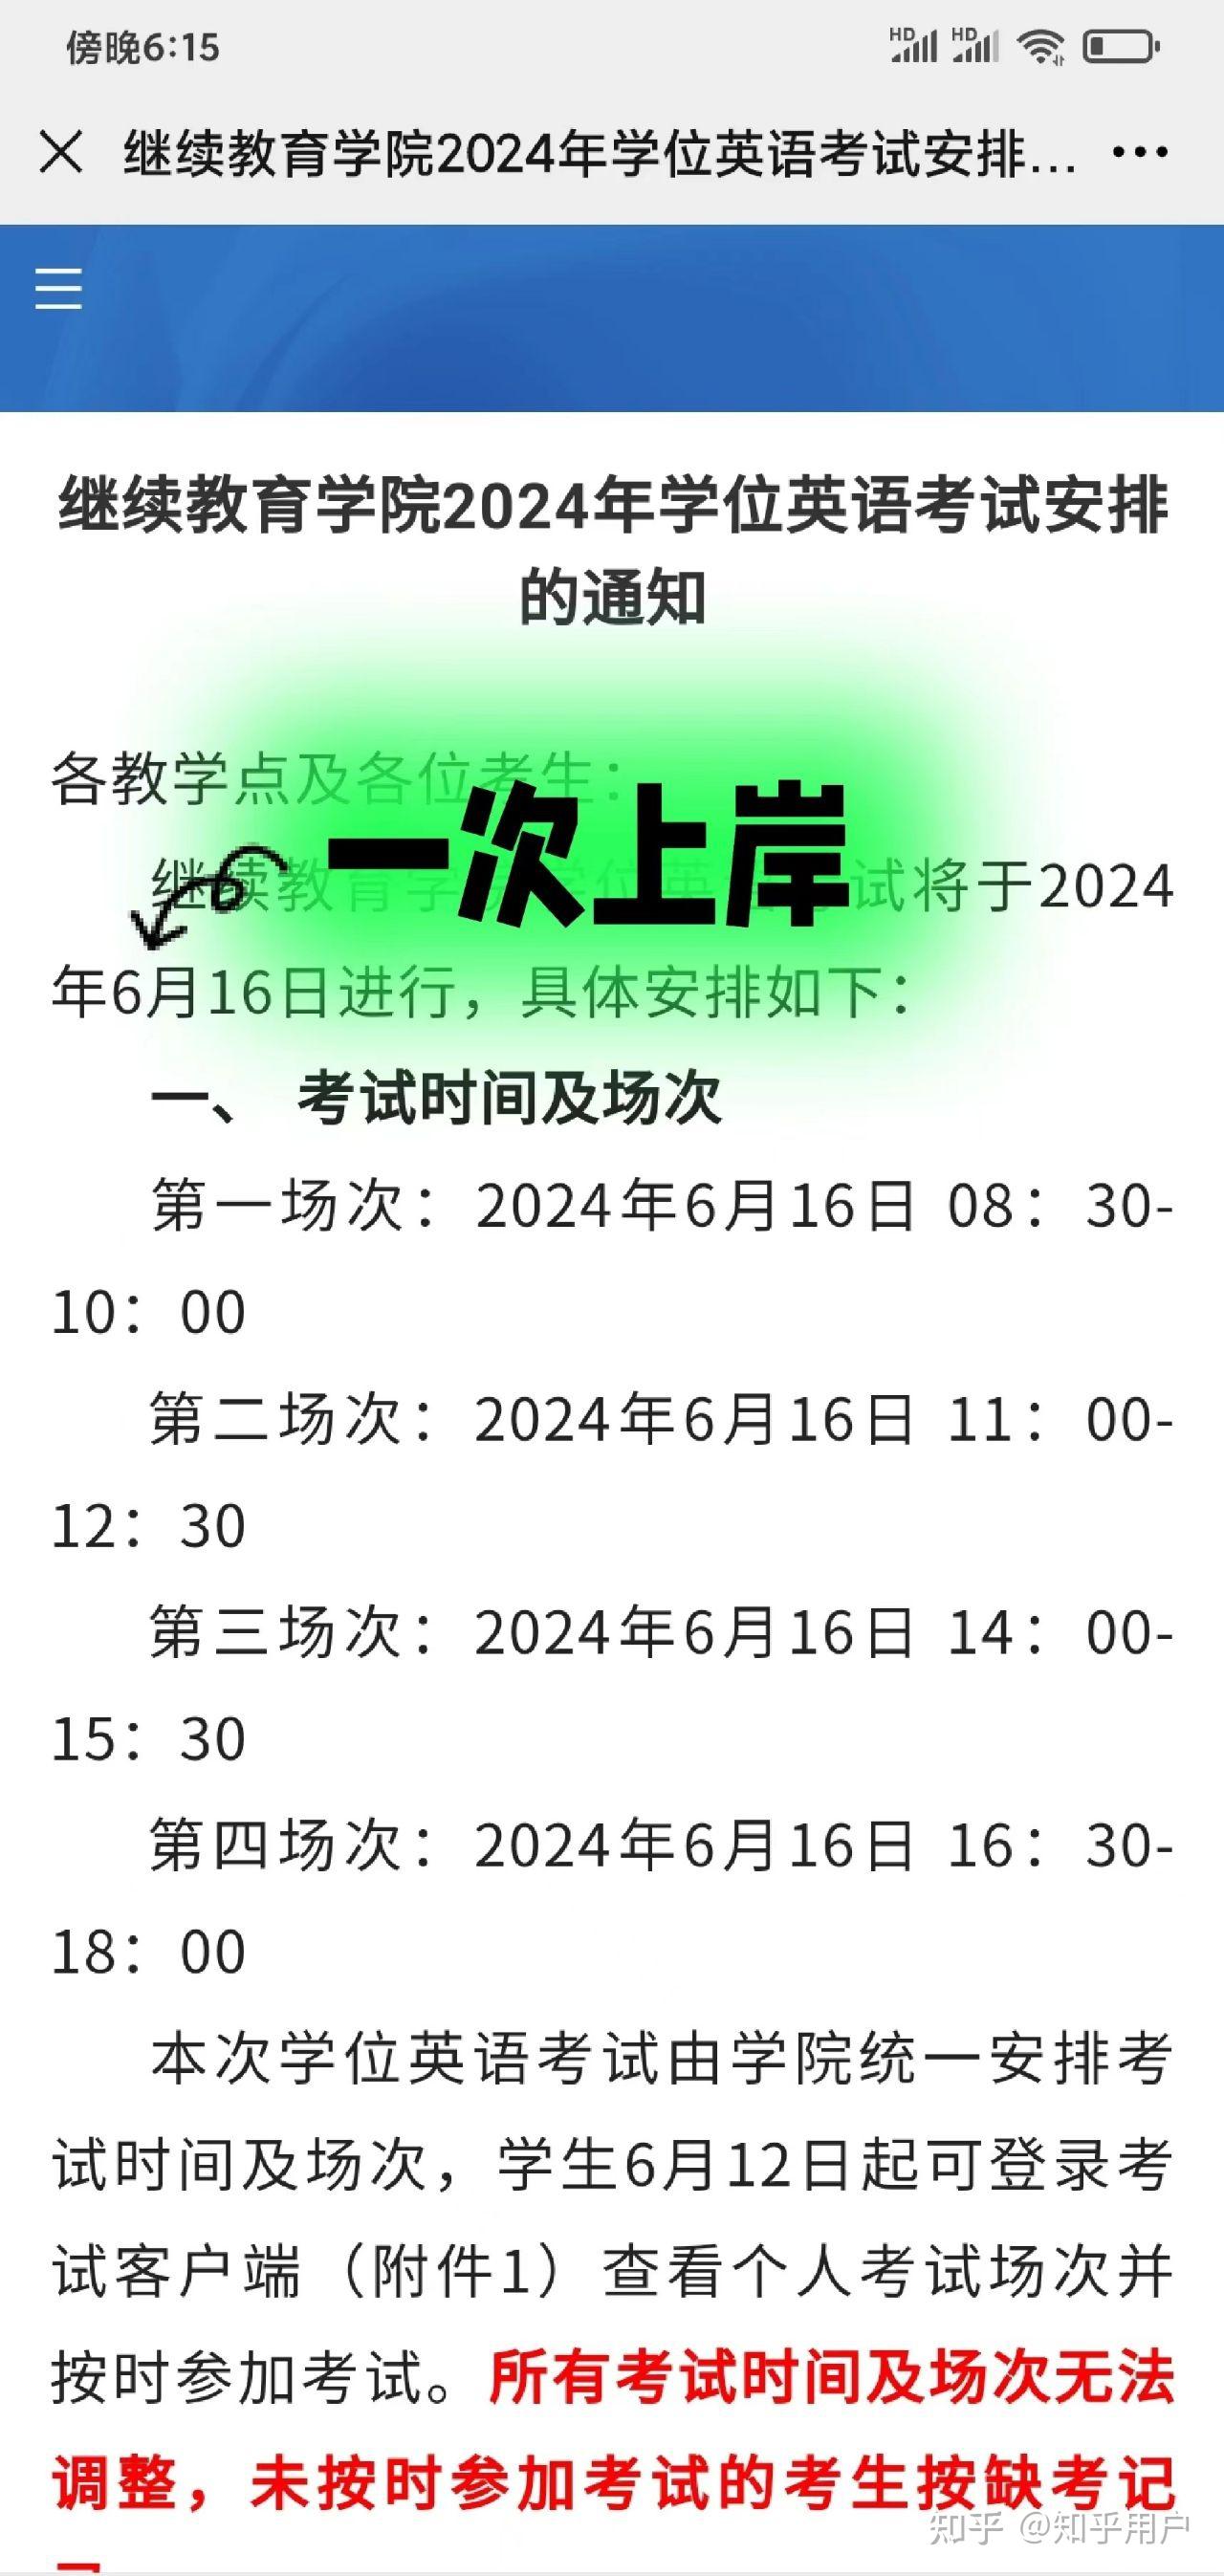 中国地质大学(北京)继续教育学院2024年线上学位英语考试安排的通知